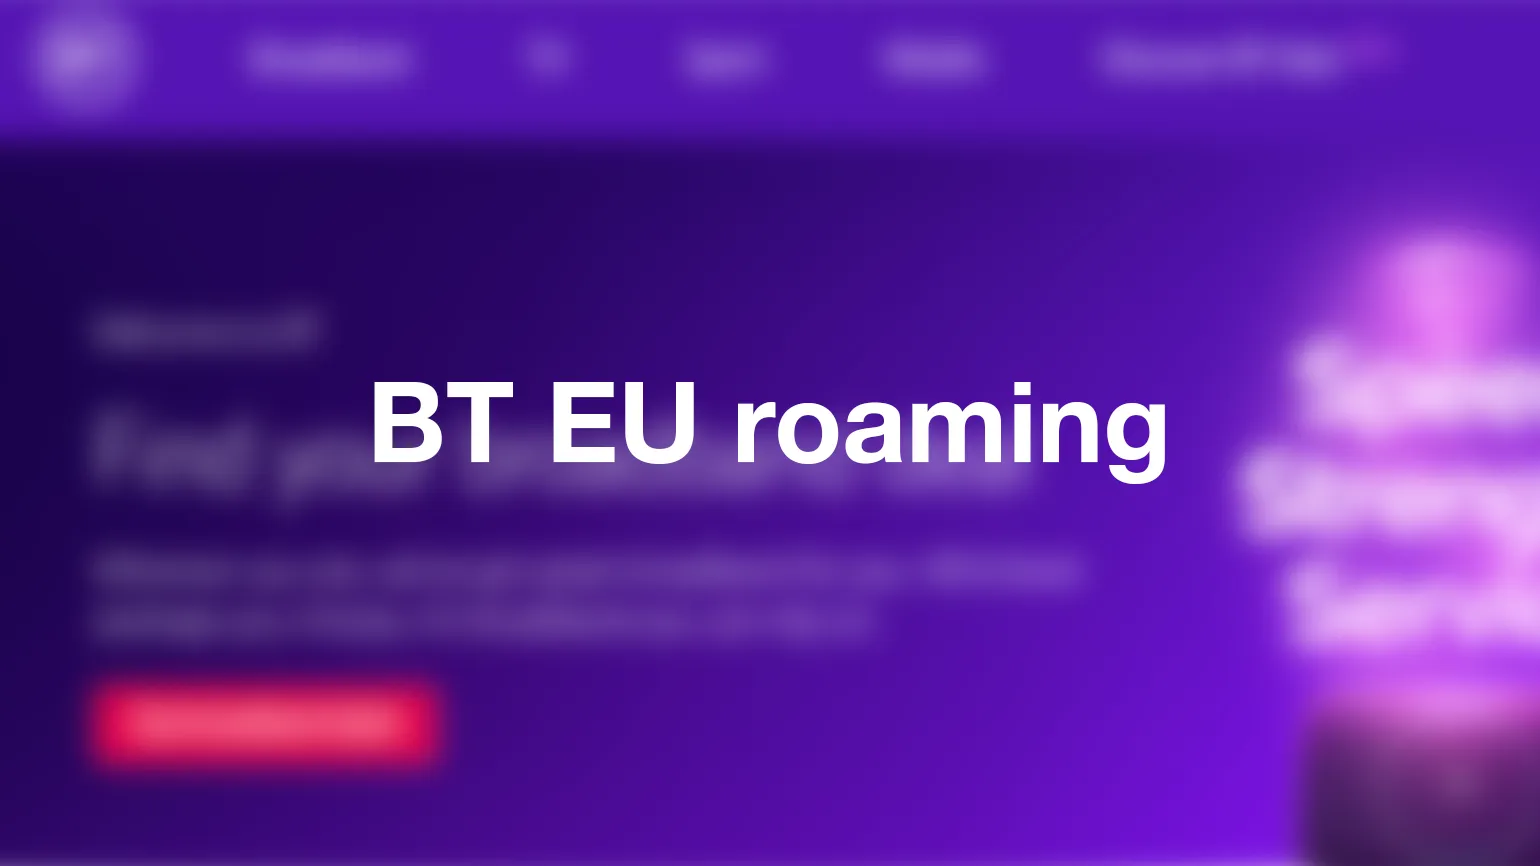 BT EU roaming - after Brexit